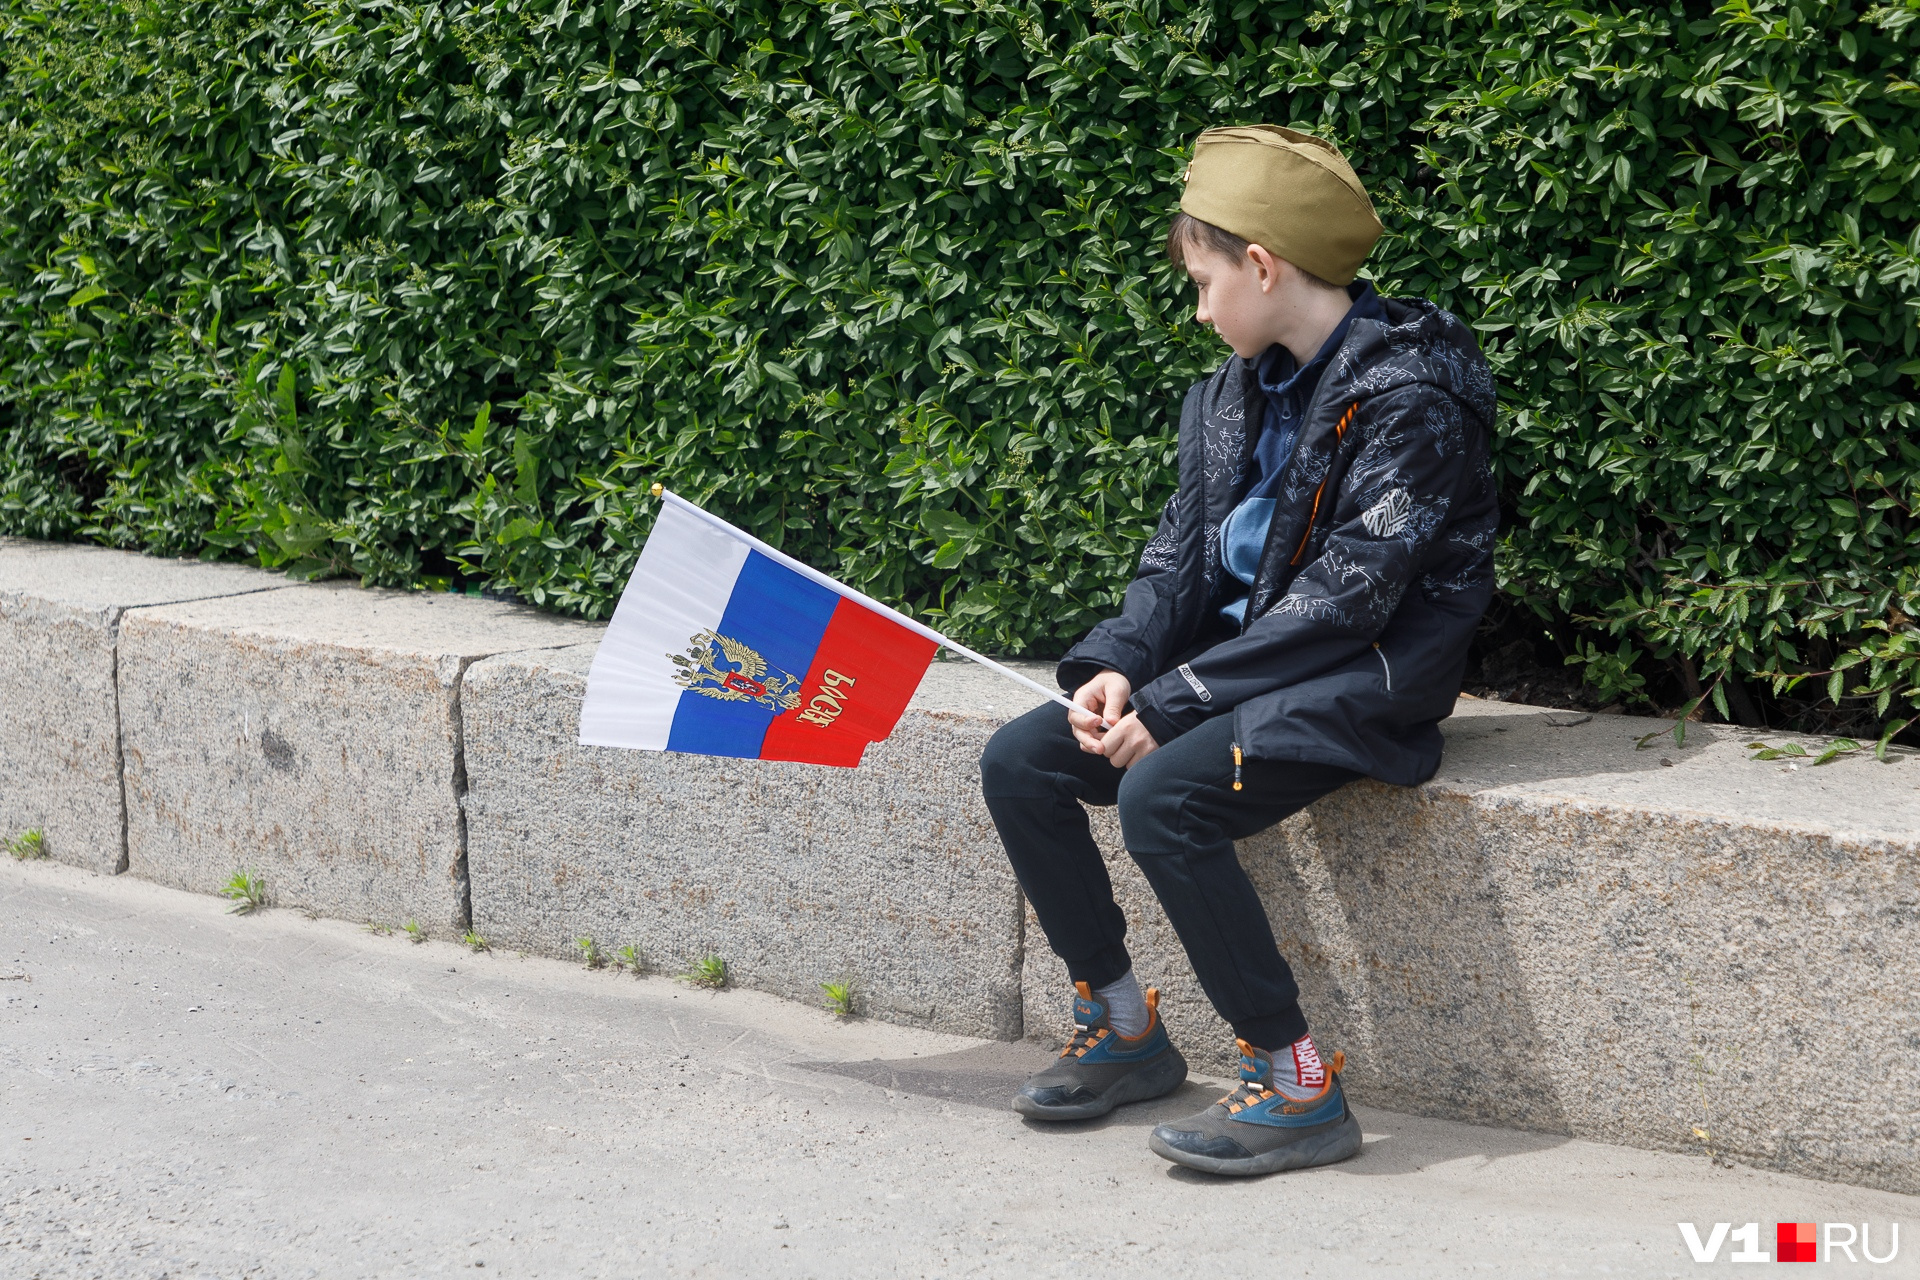 Флаг России в руках — актуально сегодня и для взрослых, и для детей